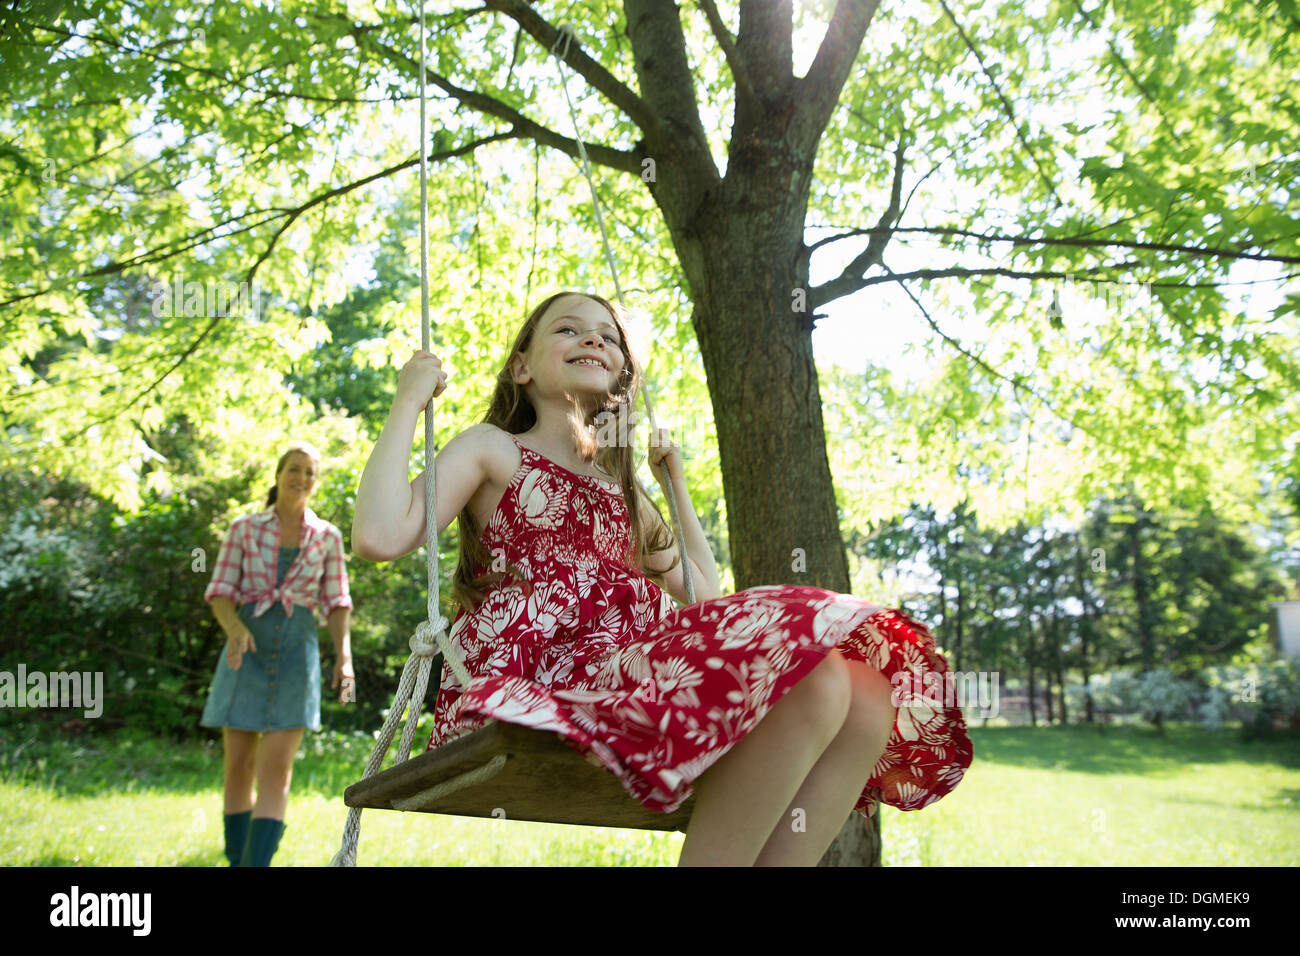 L'été. Une fille dans une robe d'été sur une balançoire accrochée à une branche d'arbre. Une femme derrière elle. Banque D'Images